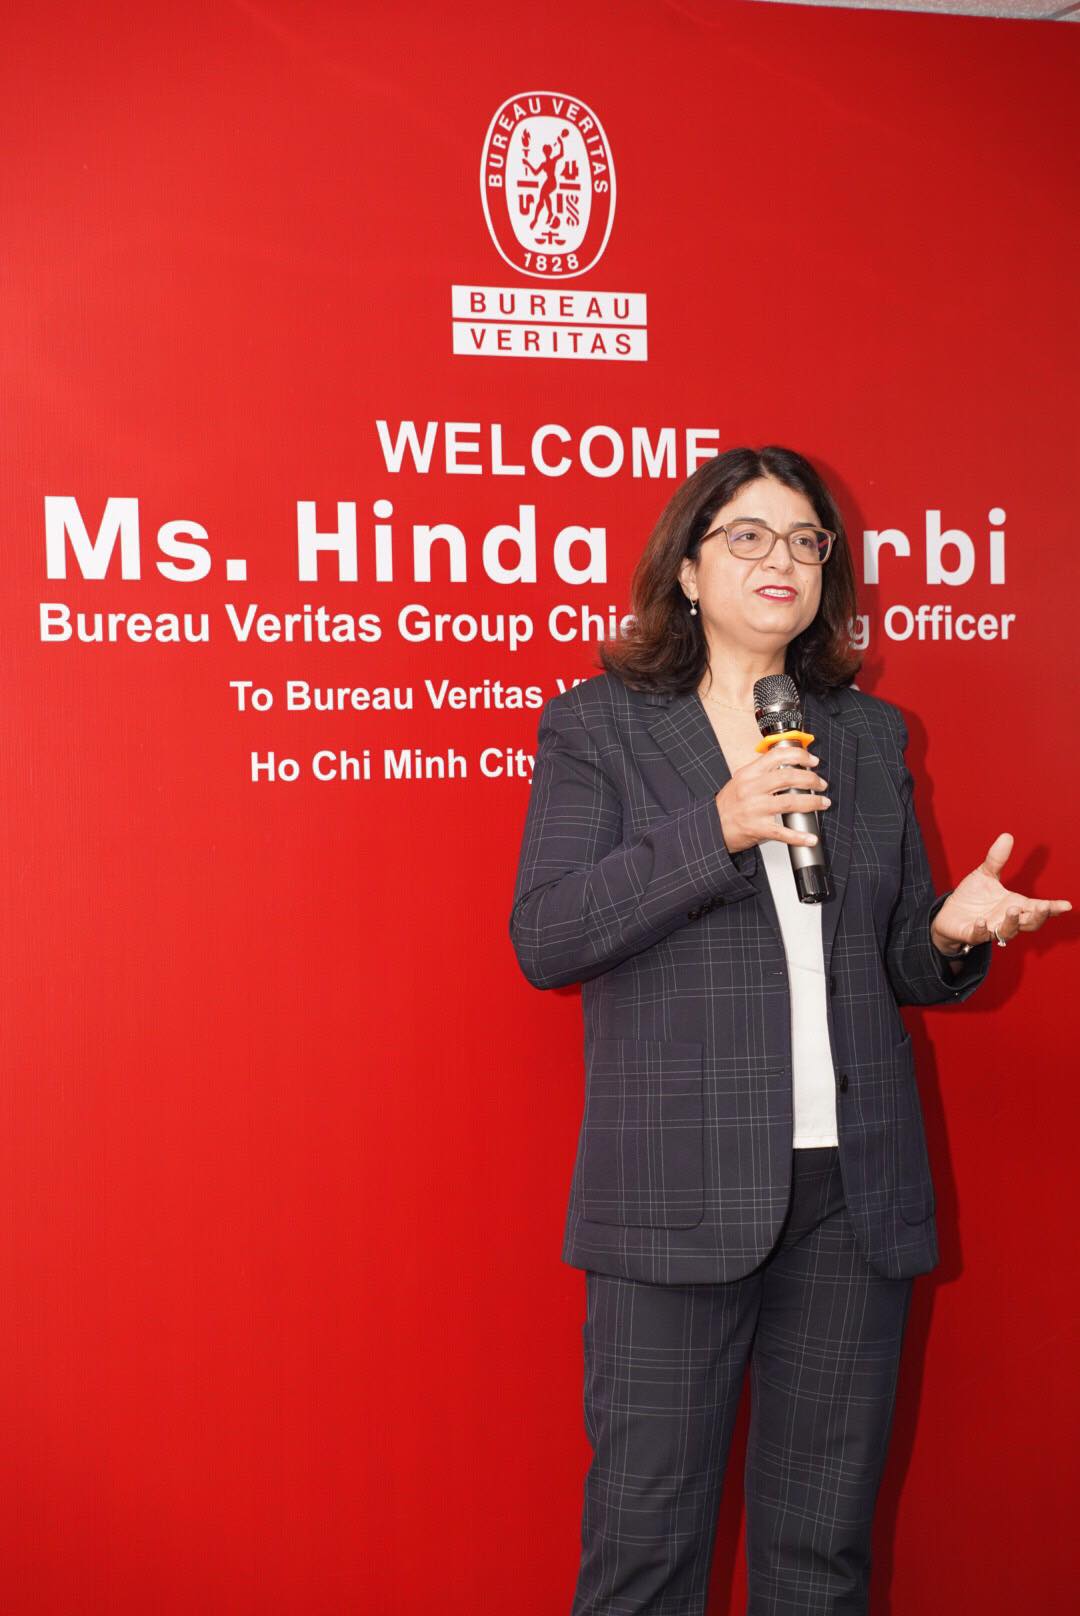 Hinda Gharbi at Bureau Veritas Vietnam Townhall meeting